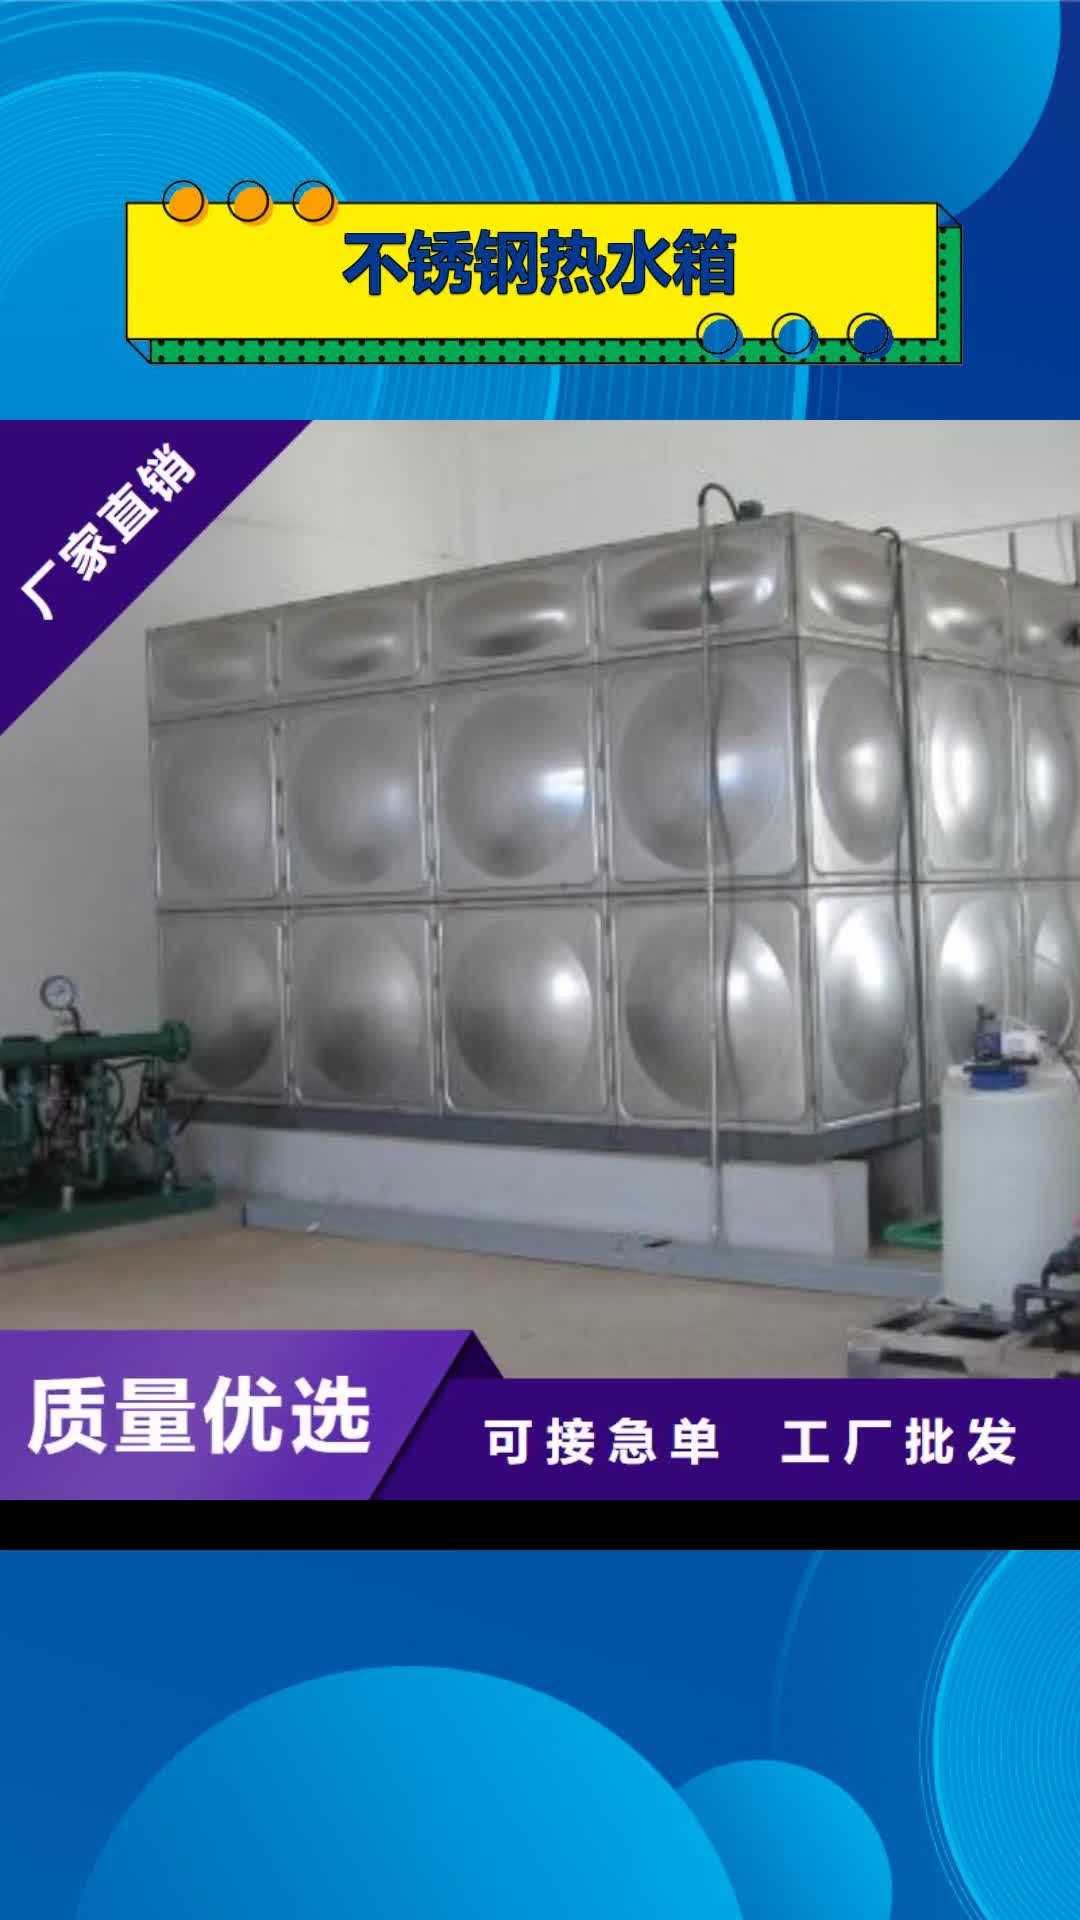 丽江 不锈钢热水箱 【变频供水设备】让利客户